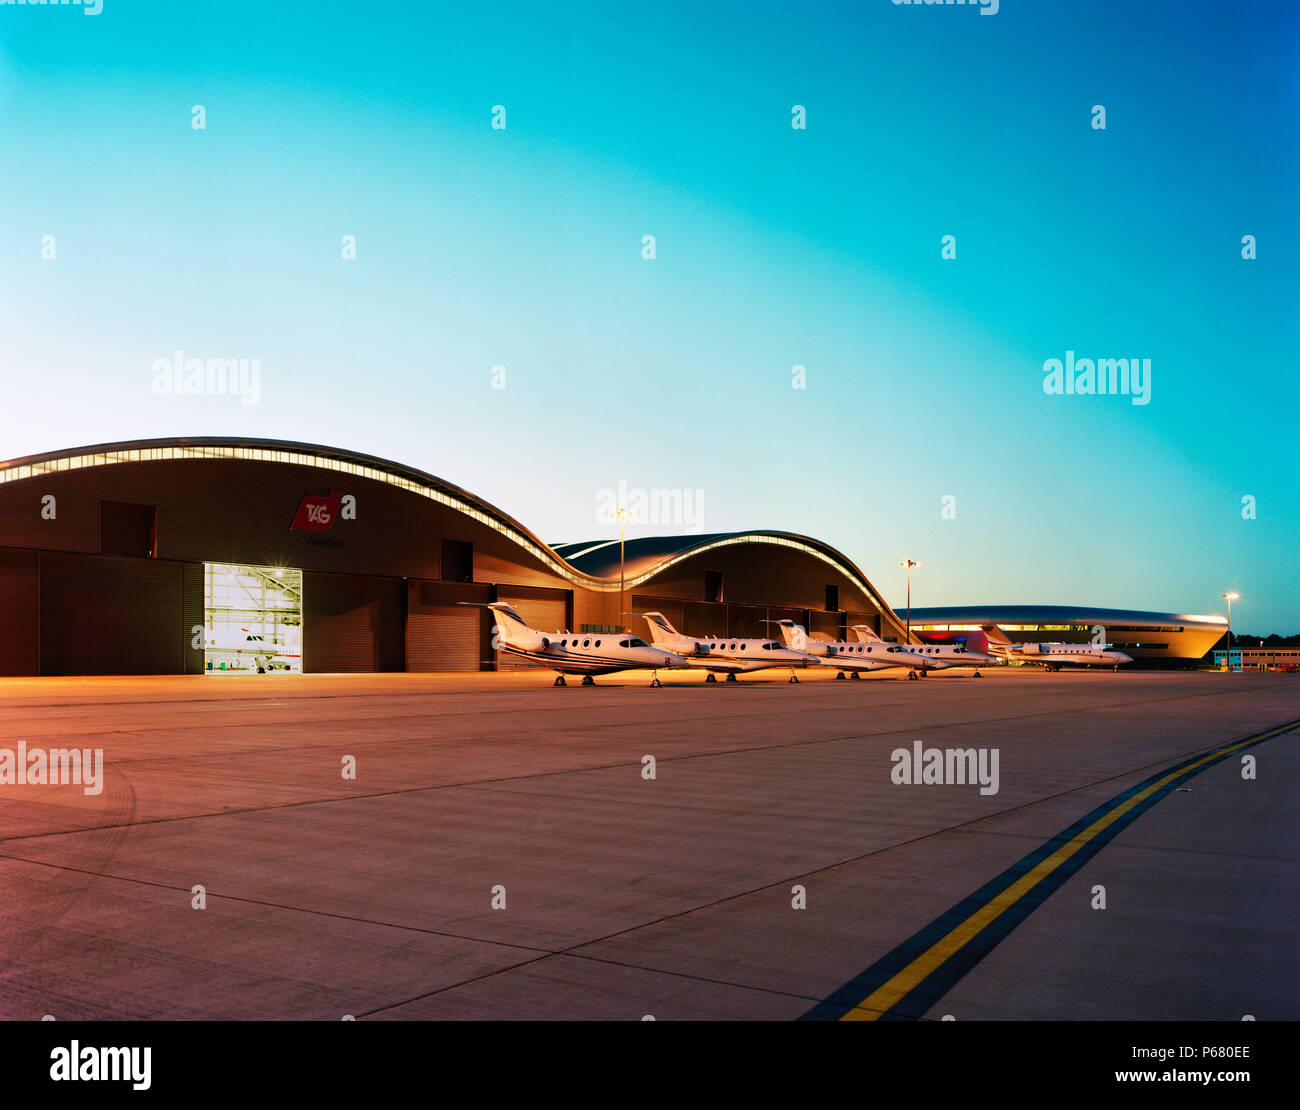 Der Turm von Farnborough airport und Hangars mit Zehnprozentiger geparkt. Durch 3d-reid Architekten entworfen. Stockfoto